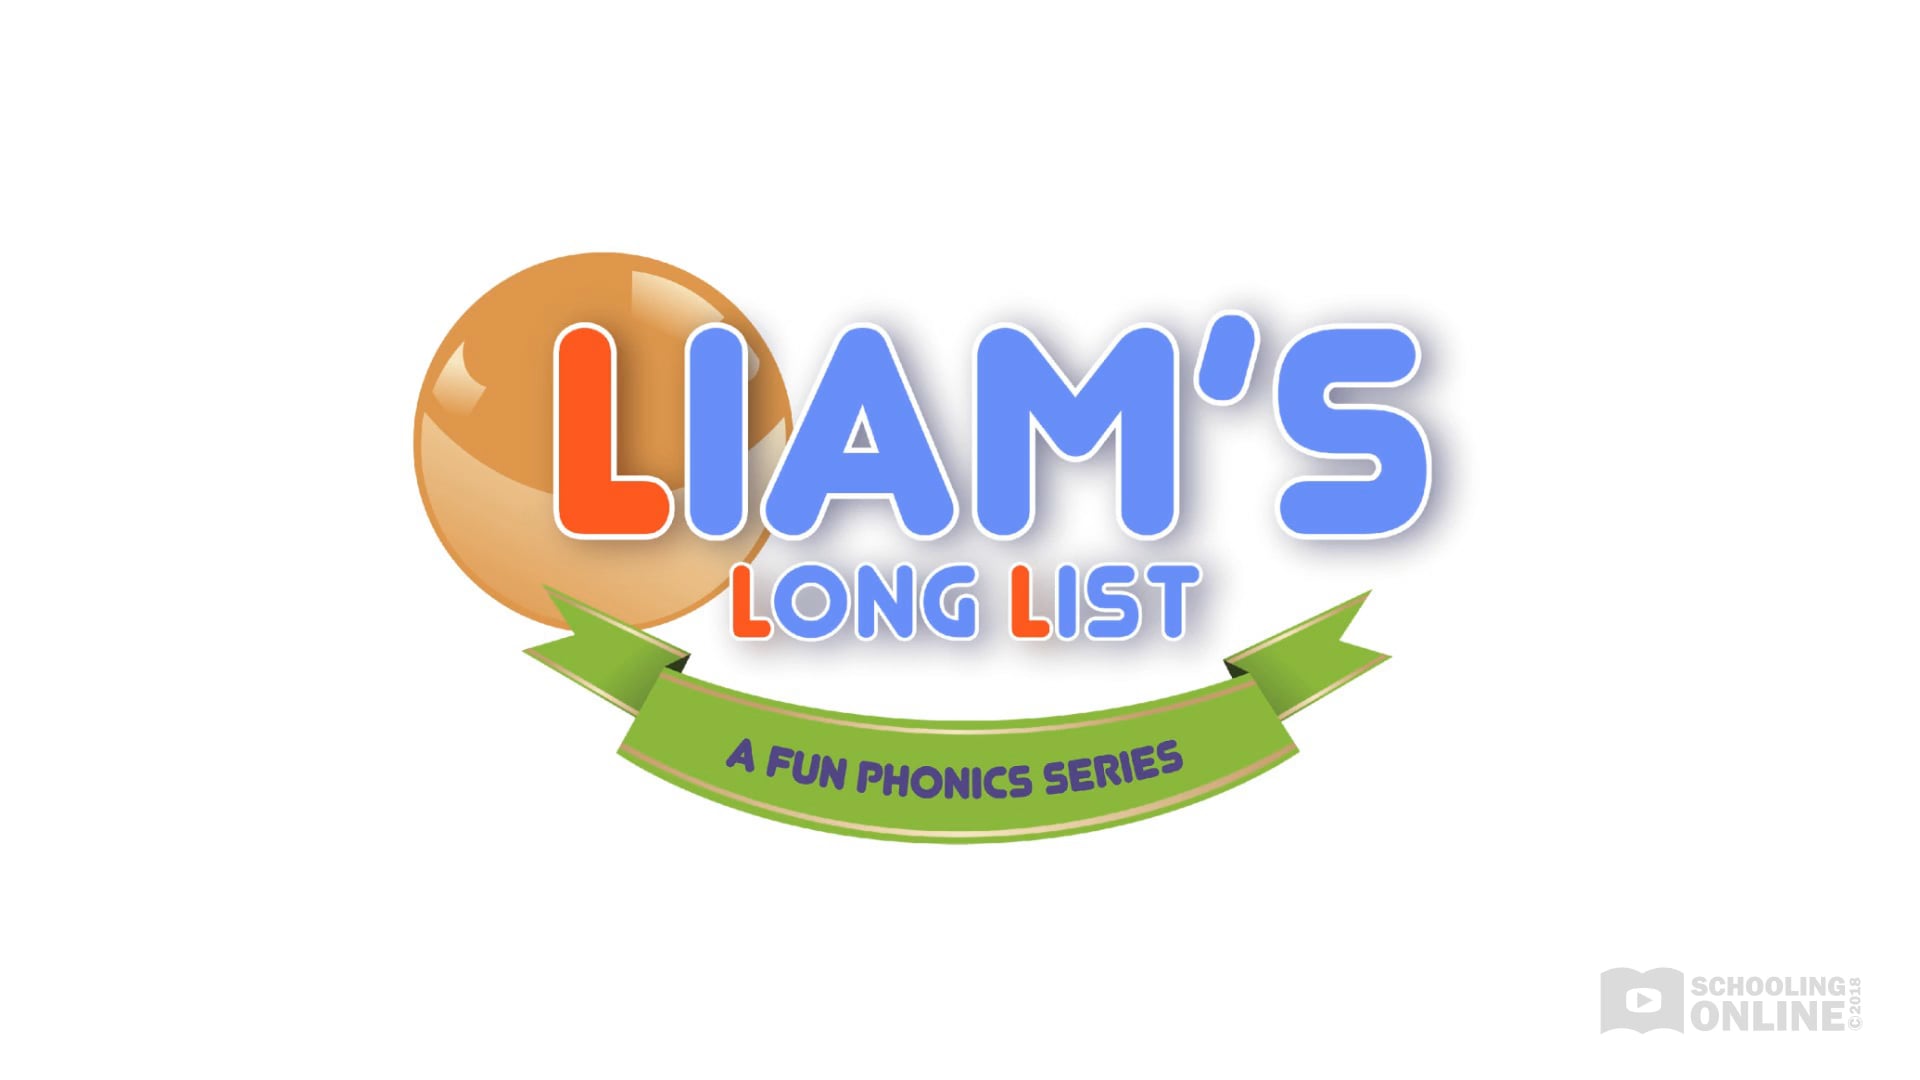 Liam's Long List